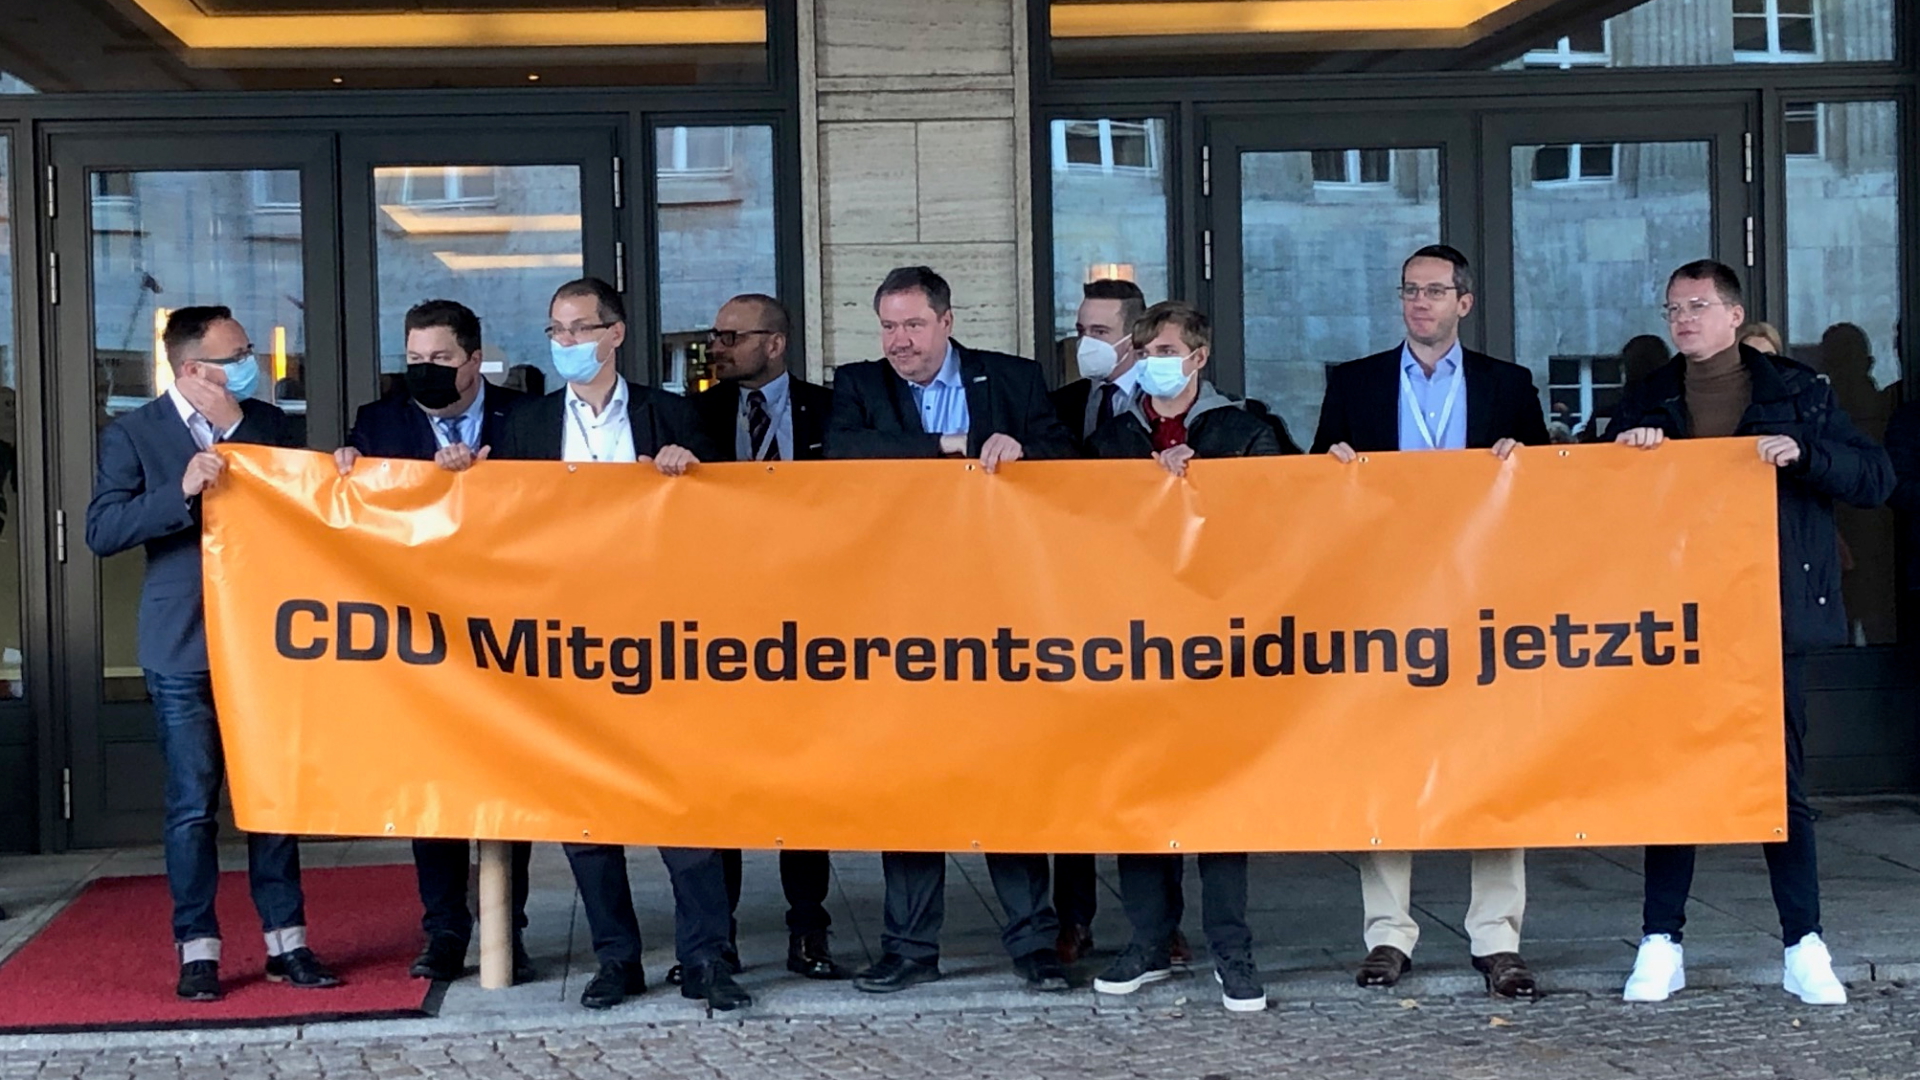 Mitglieder der Jungen Union halten ein Transparat mit der Forderung: "CDU Mitgliederentscheidung jetzt!"